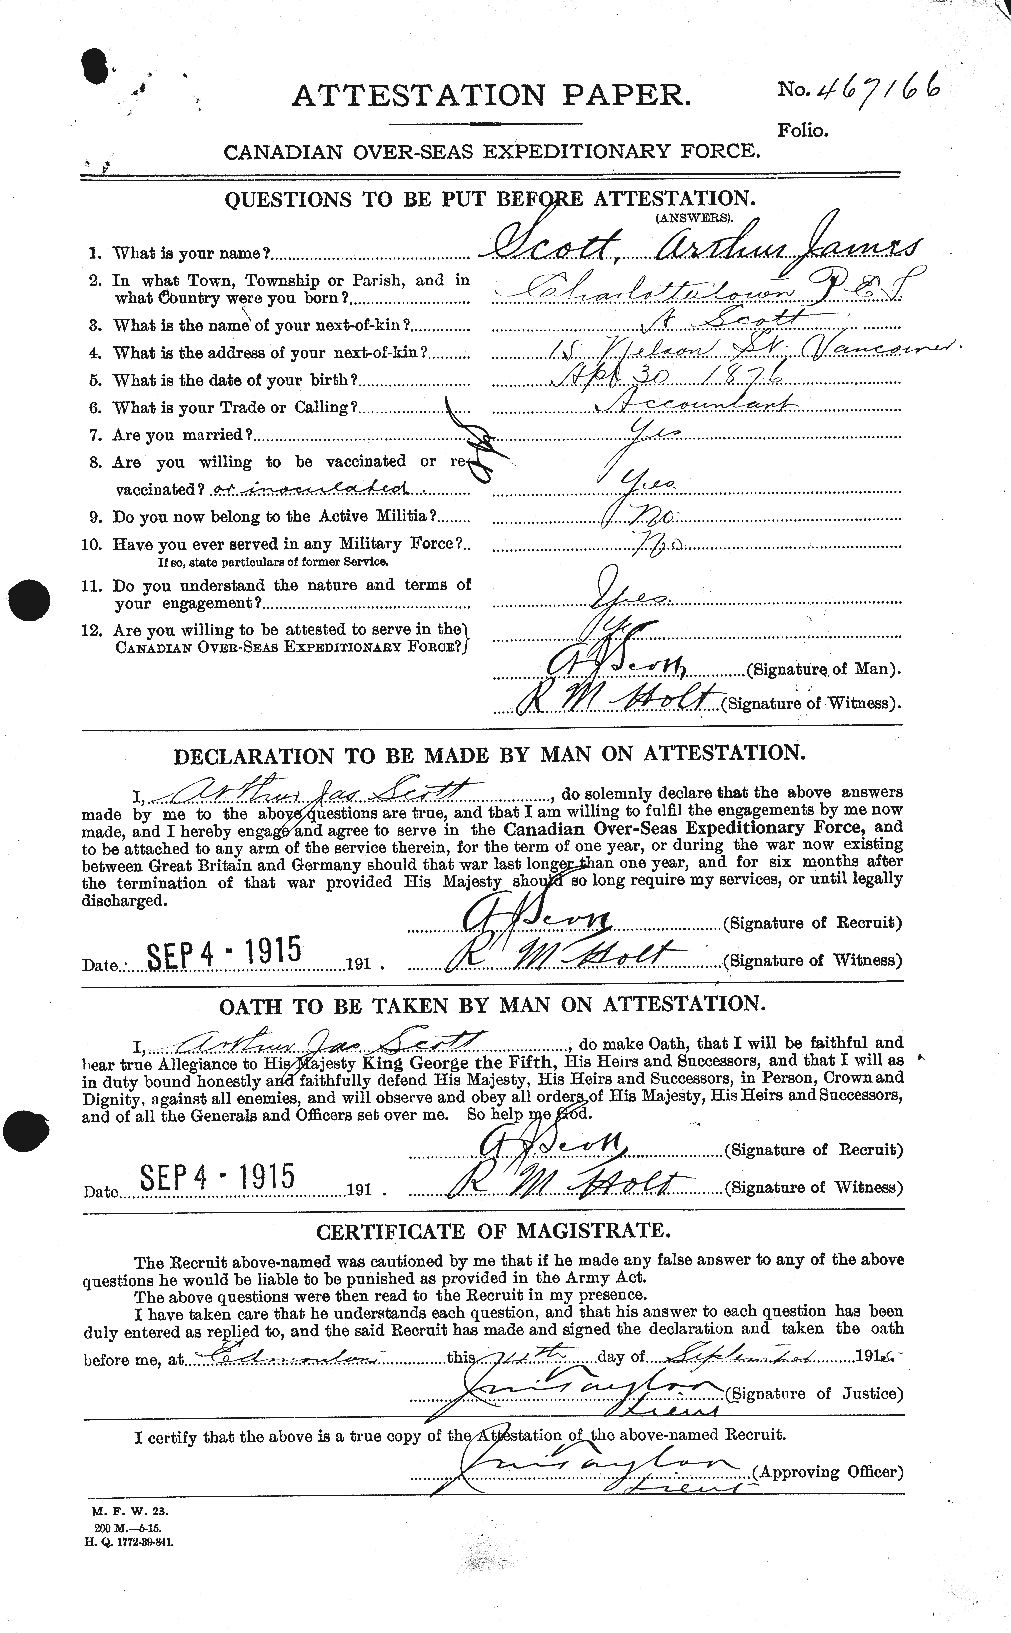 Dossiers du Personnel de la Première Guerre mondiale - CEC 086234a